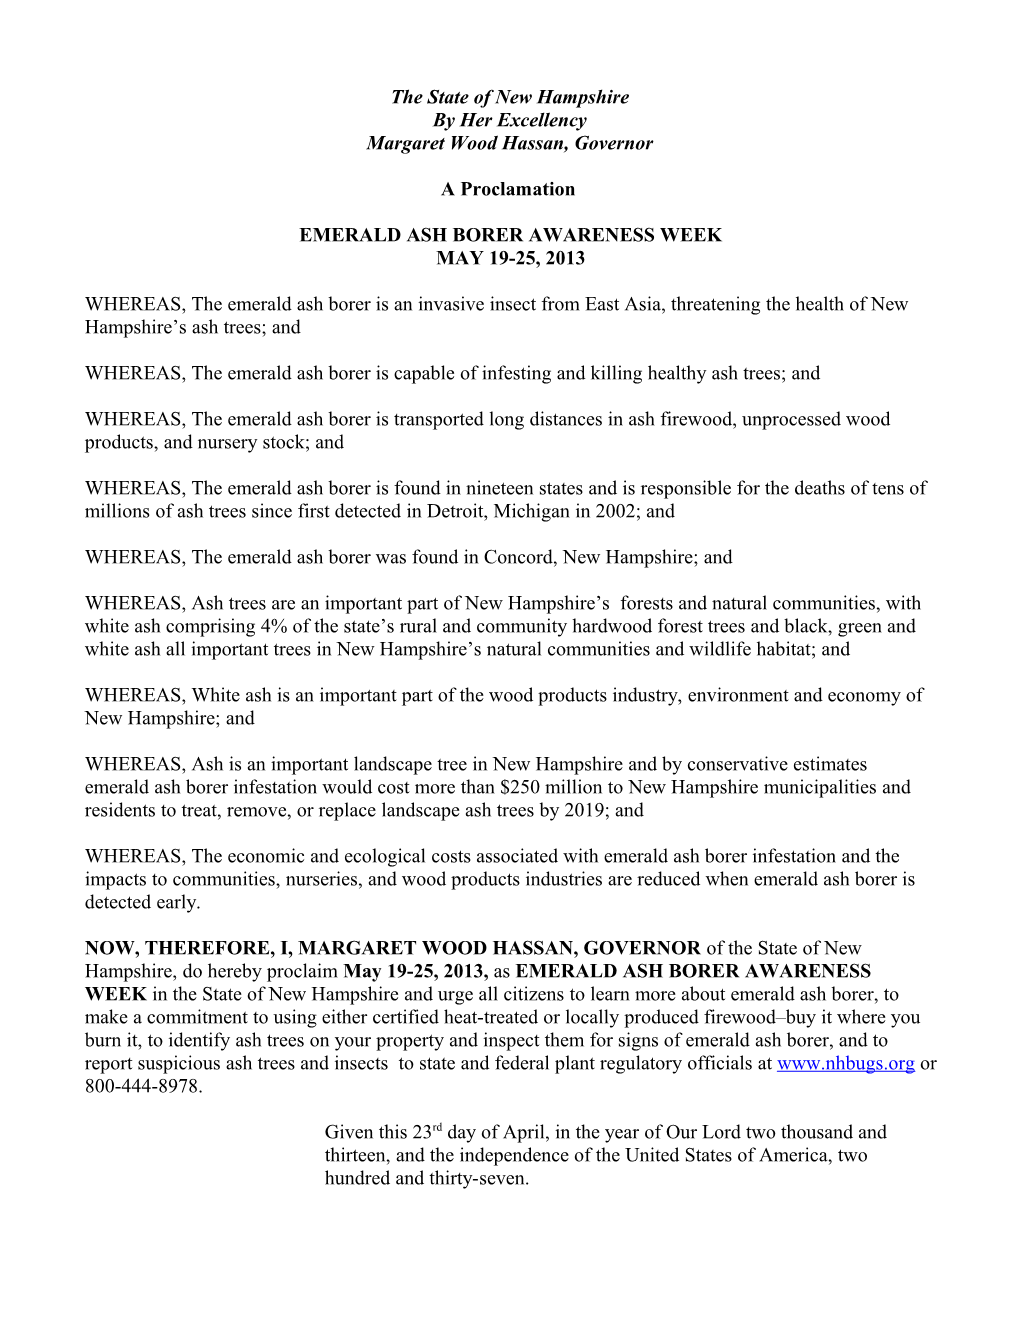 Governor S Proclamation Regarding EAB Awareness Week